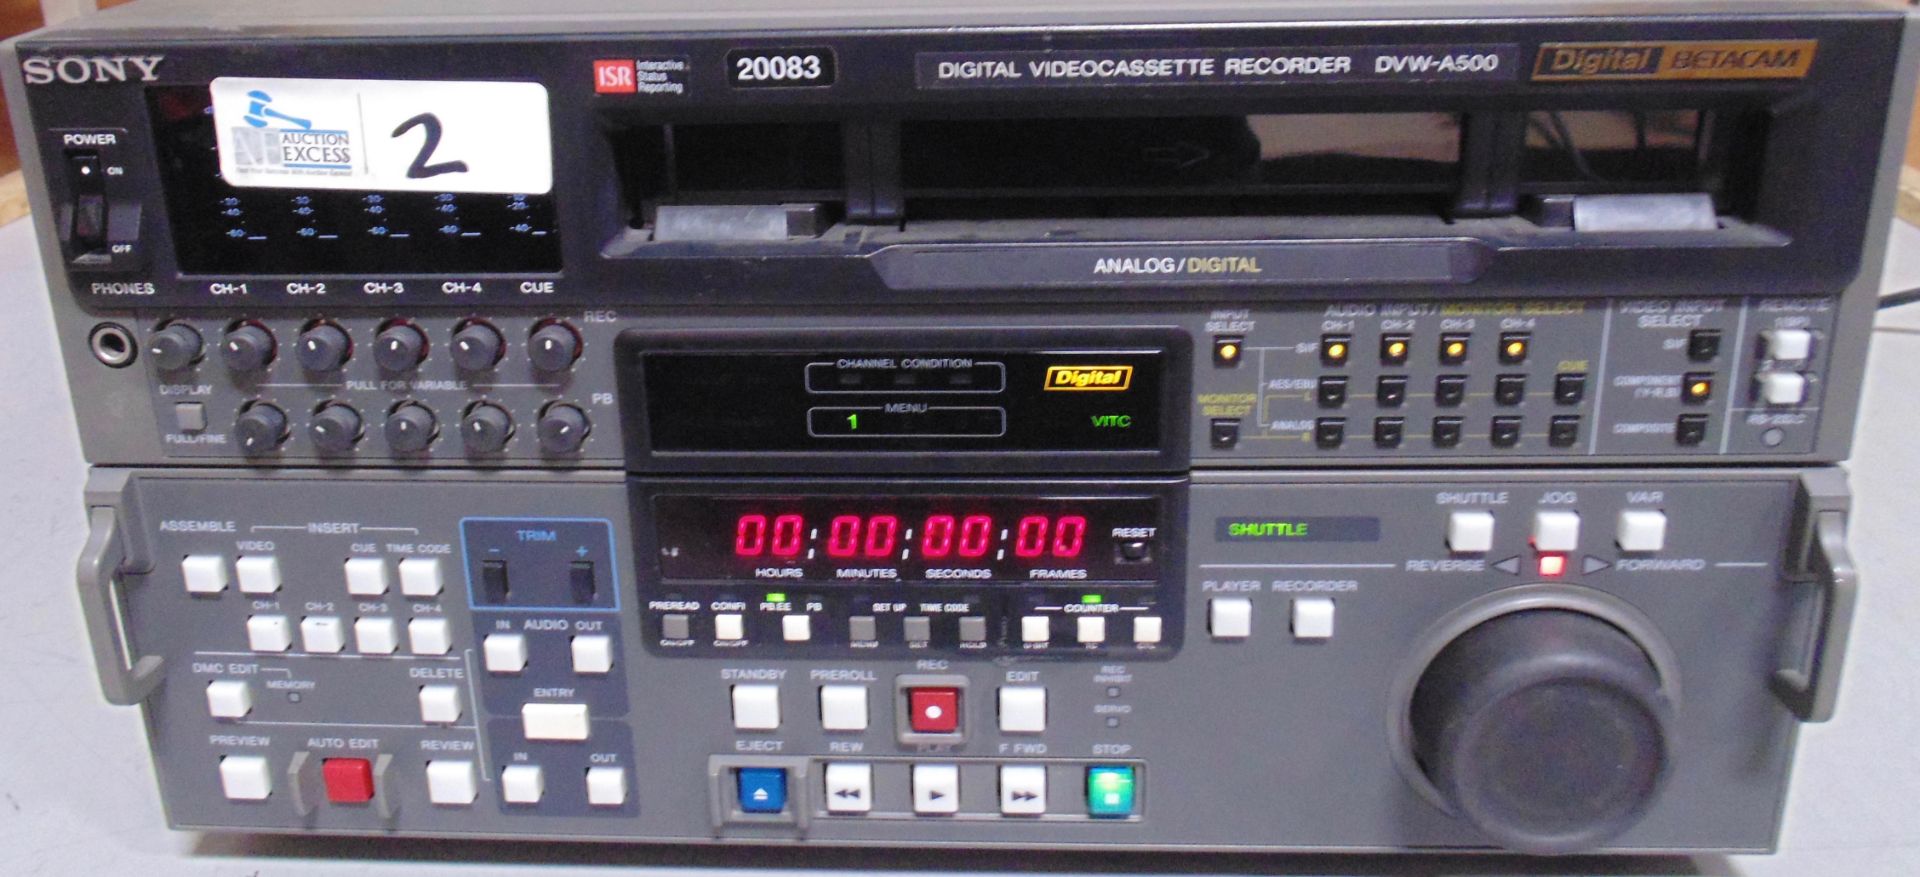 SONY DVW-A500